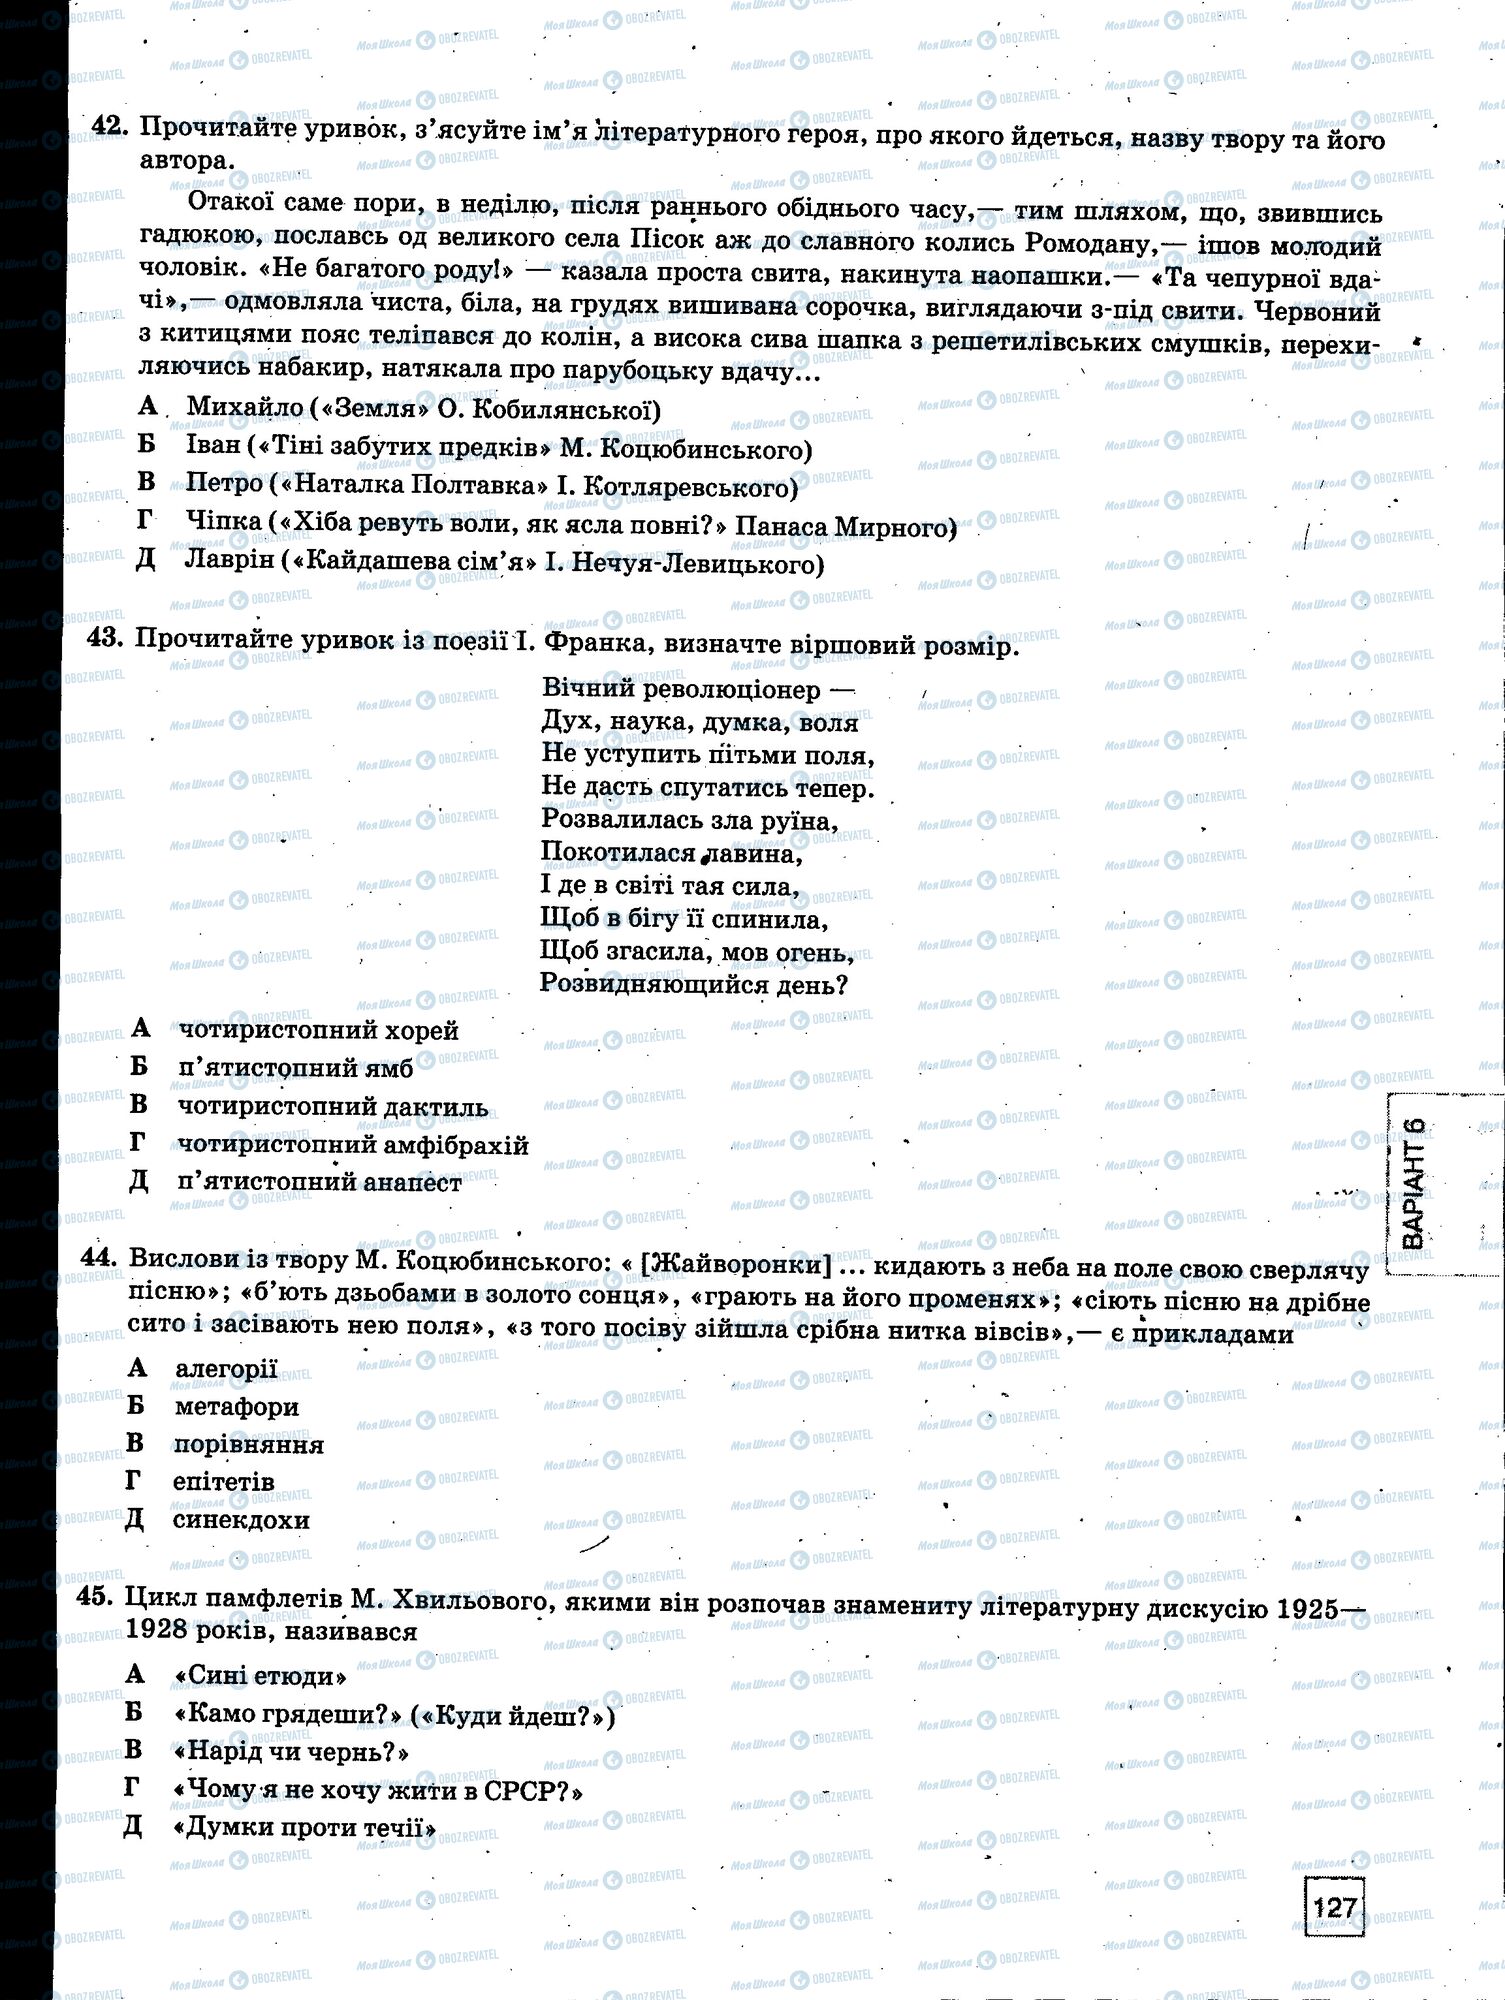 ЗНО Укр мова 11 класс страница 127